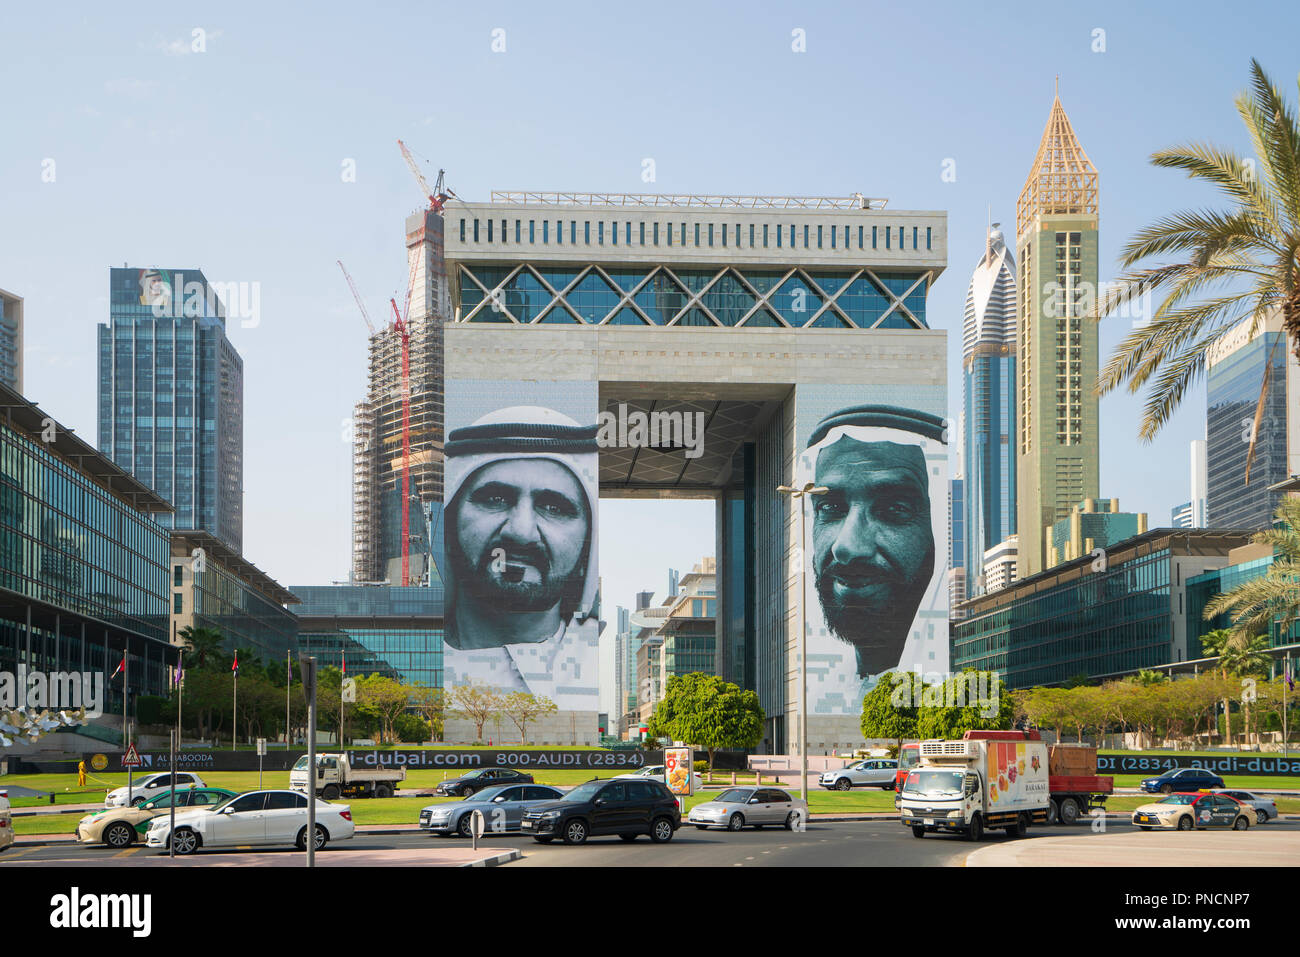 (DIFC Dubai International Financial Center) Eine besondere wirtschaftliche Zone in Dubai, VAE, Vereinigte Arabische Emirate. Stockfoto